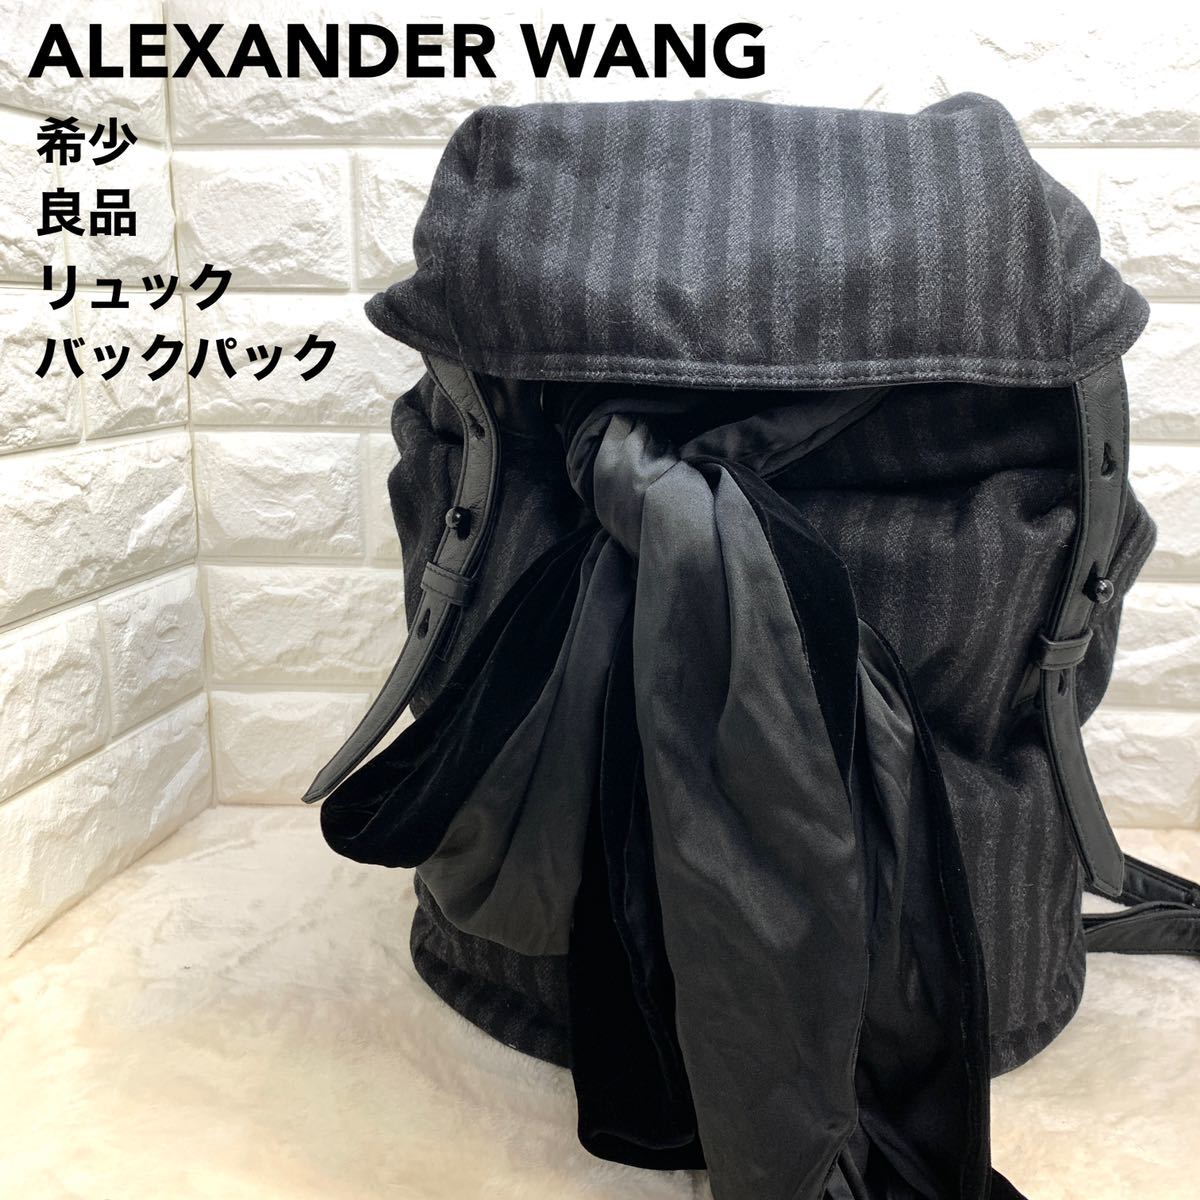 アレキサンダー・ワン(Alexander Wang)の新品・未使用品・中古品 